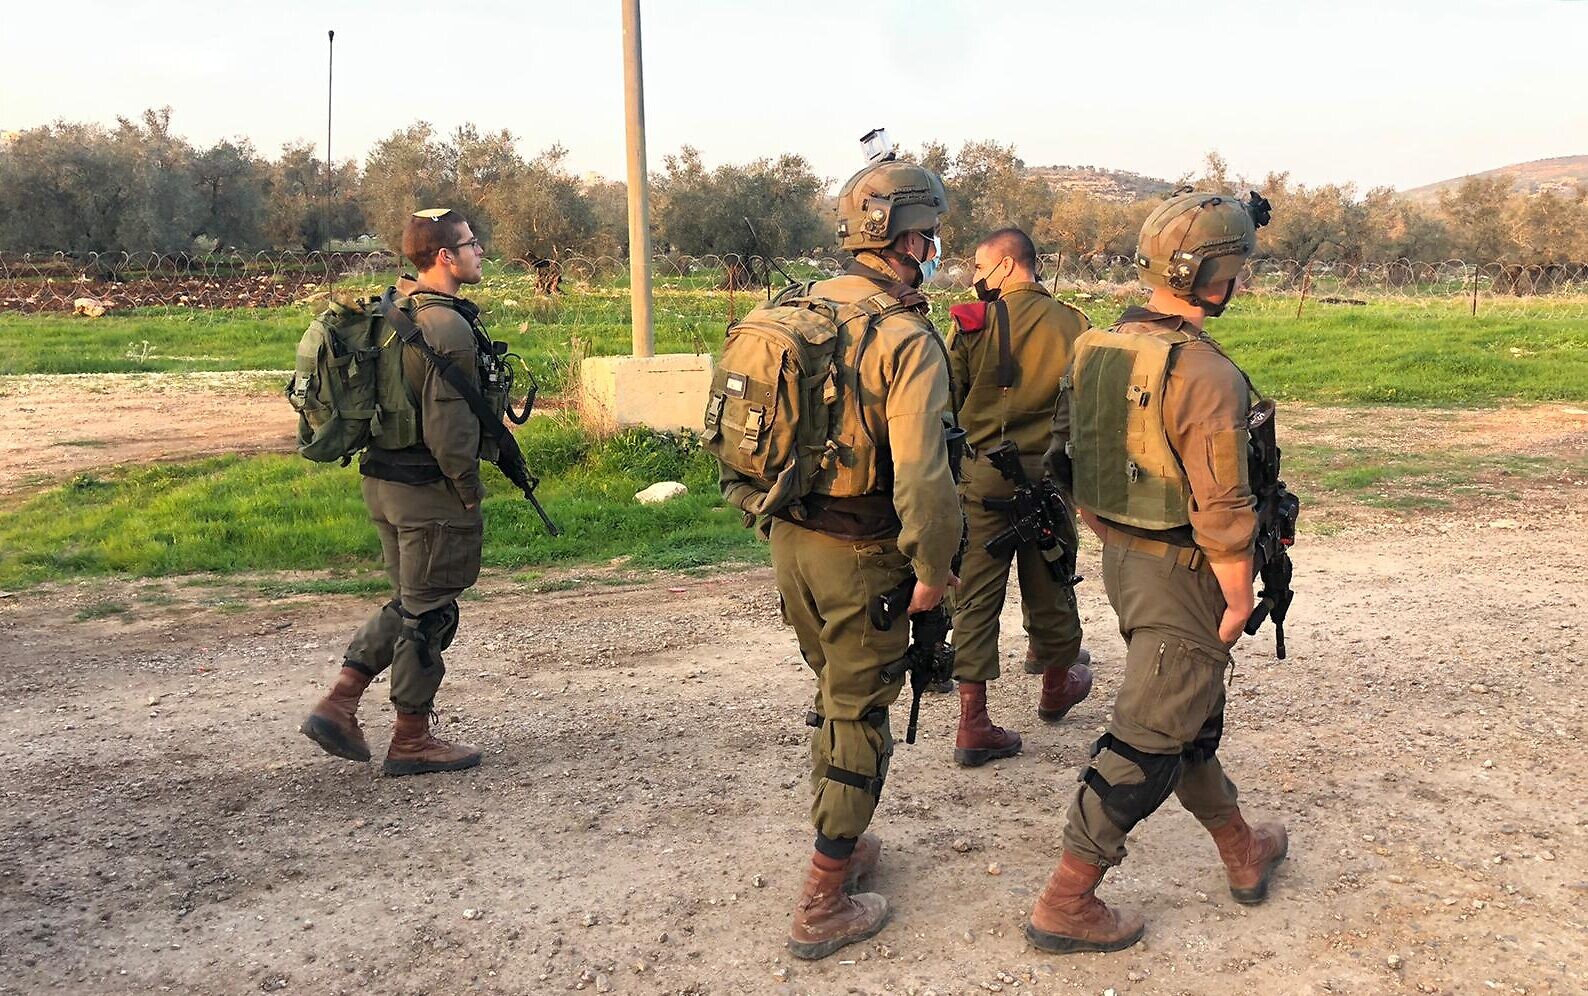 Солдаты на улице Израиля. Солдаты Израиля ведут учения. Израильский солдат на рельсах. Солдат ЦАХАЛ С саблей косой. Попытка нападения